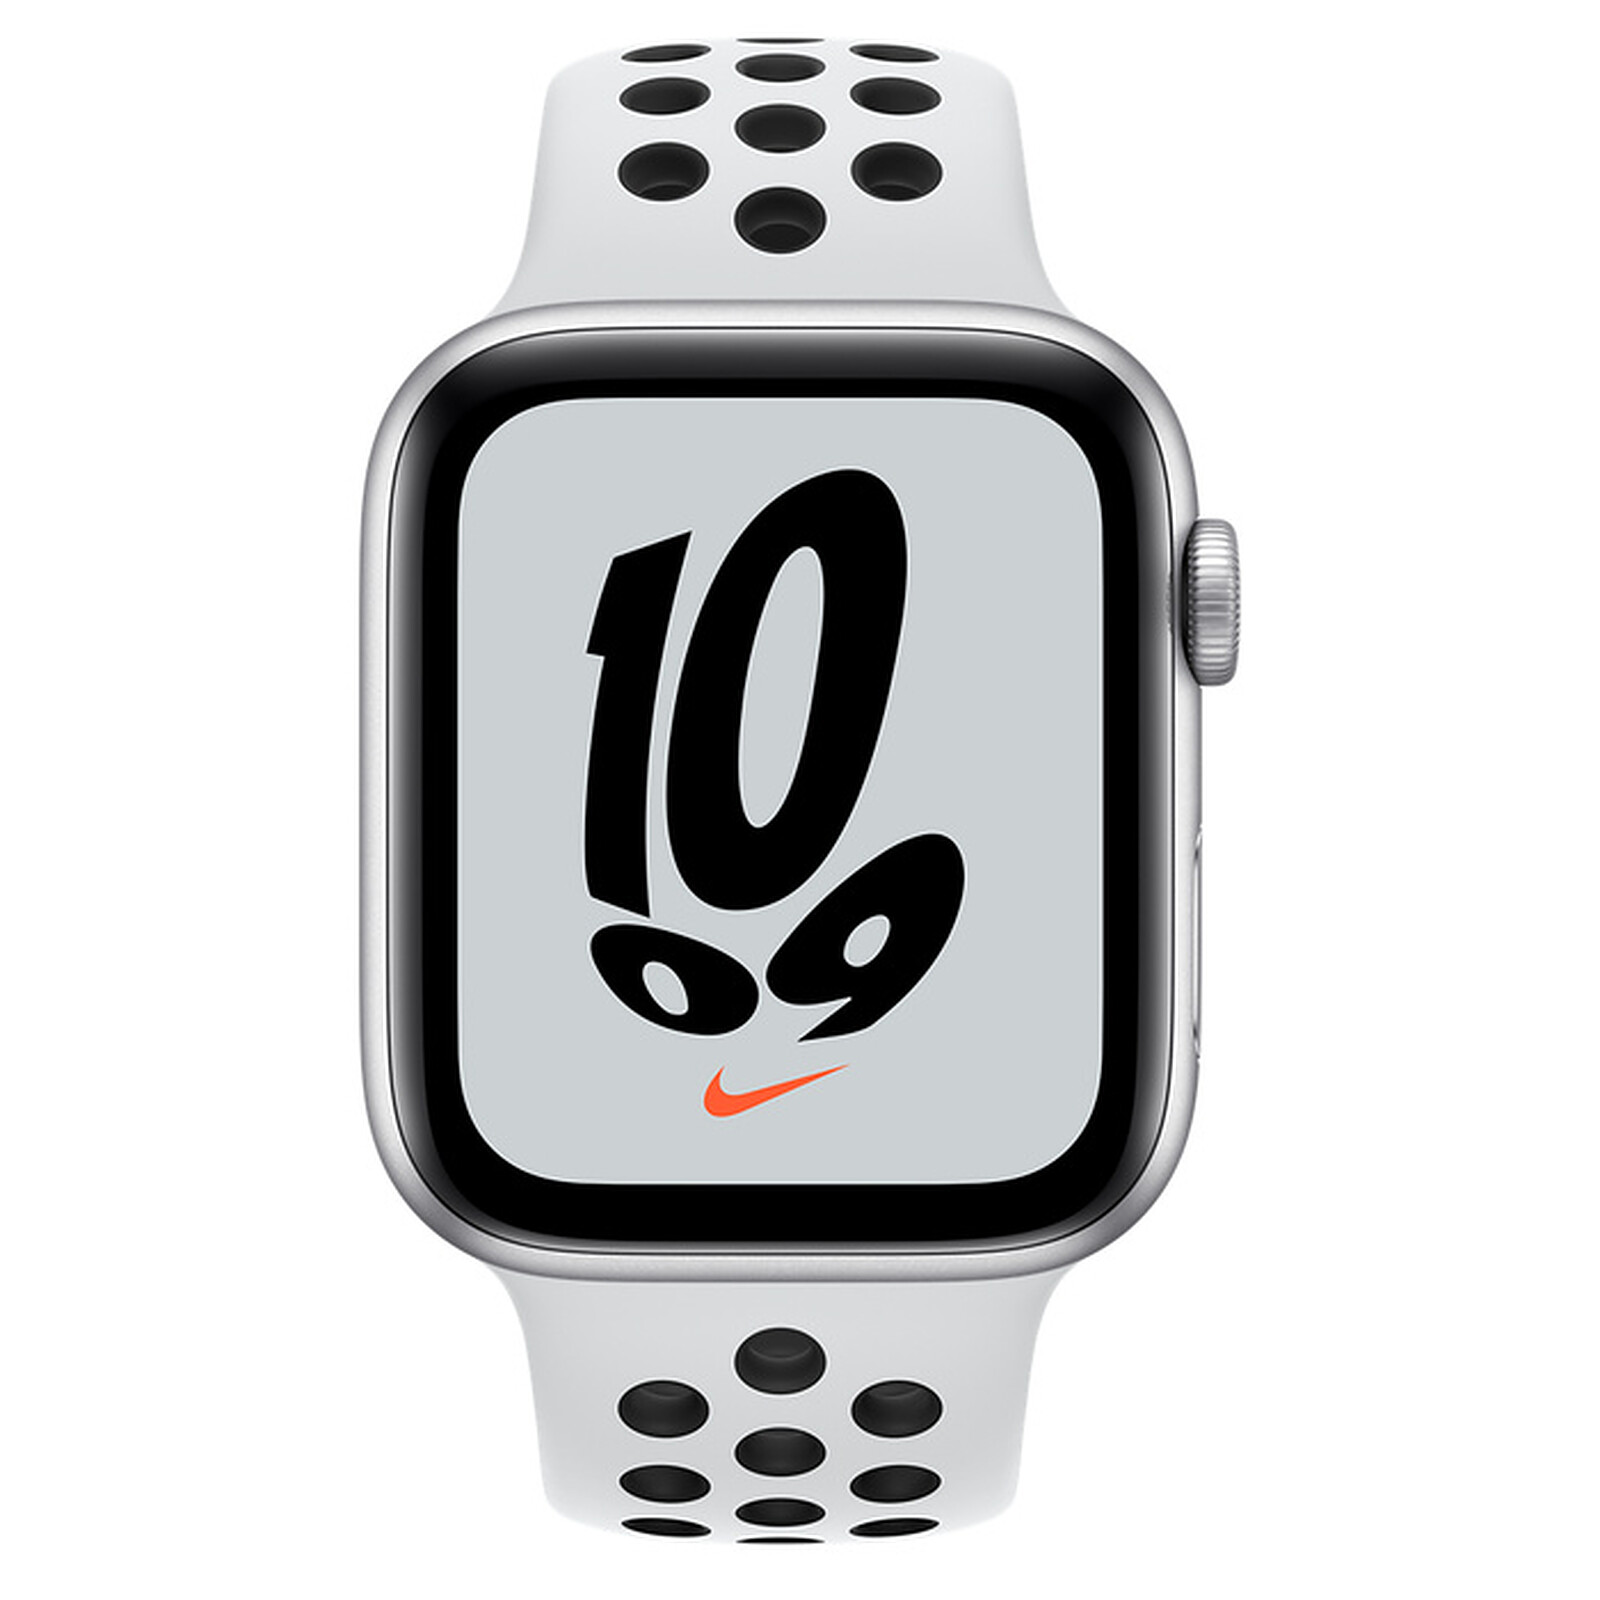 感謝価格】 Apple Watch series4 44ミリ Wi-Fiモデル - ラバーベルト - app-zen.com